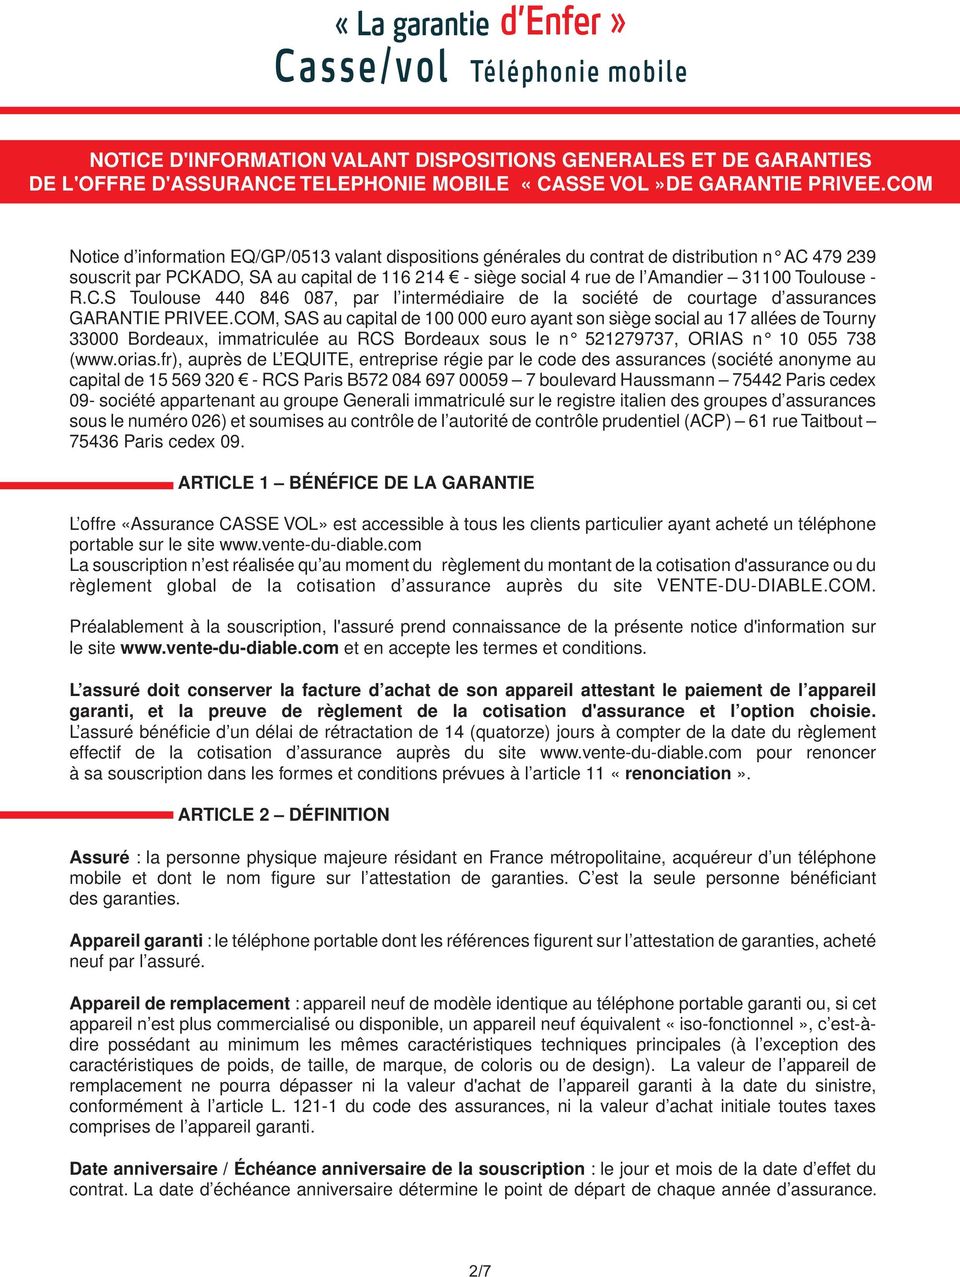 Toulouse - R.C.S Toulouse 440 846 087, par l intermédiaire de la société de courtage d assurances GARANTIE PRIVEE.